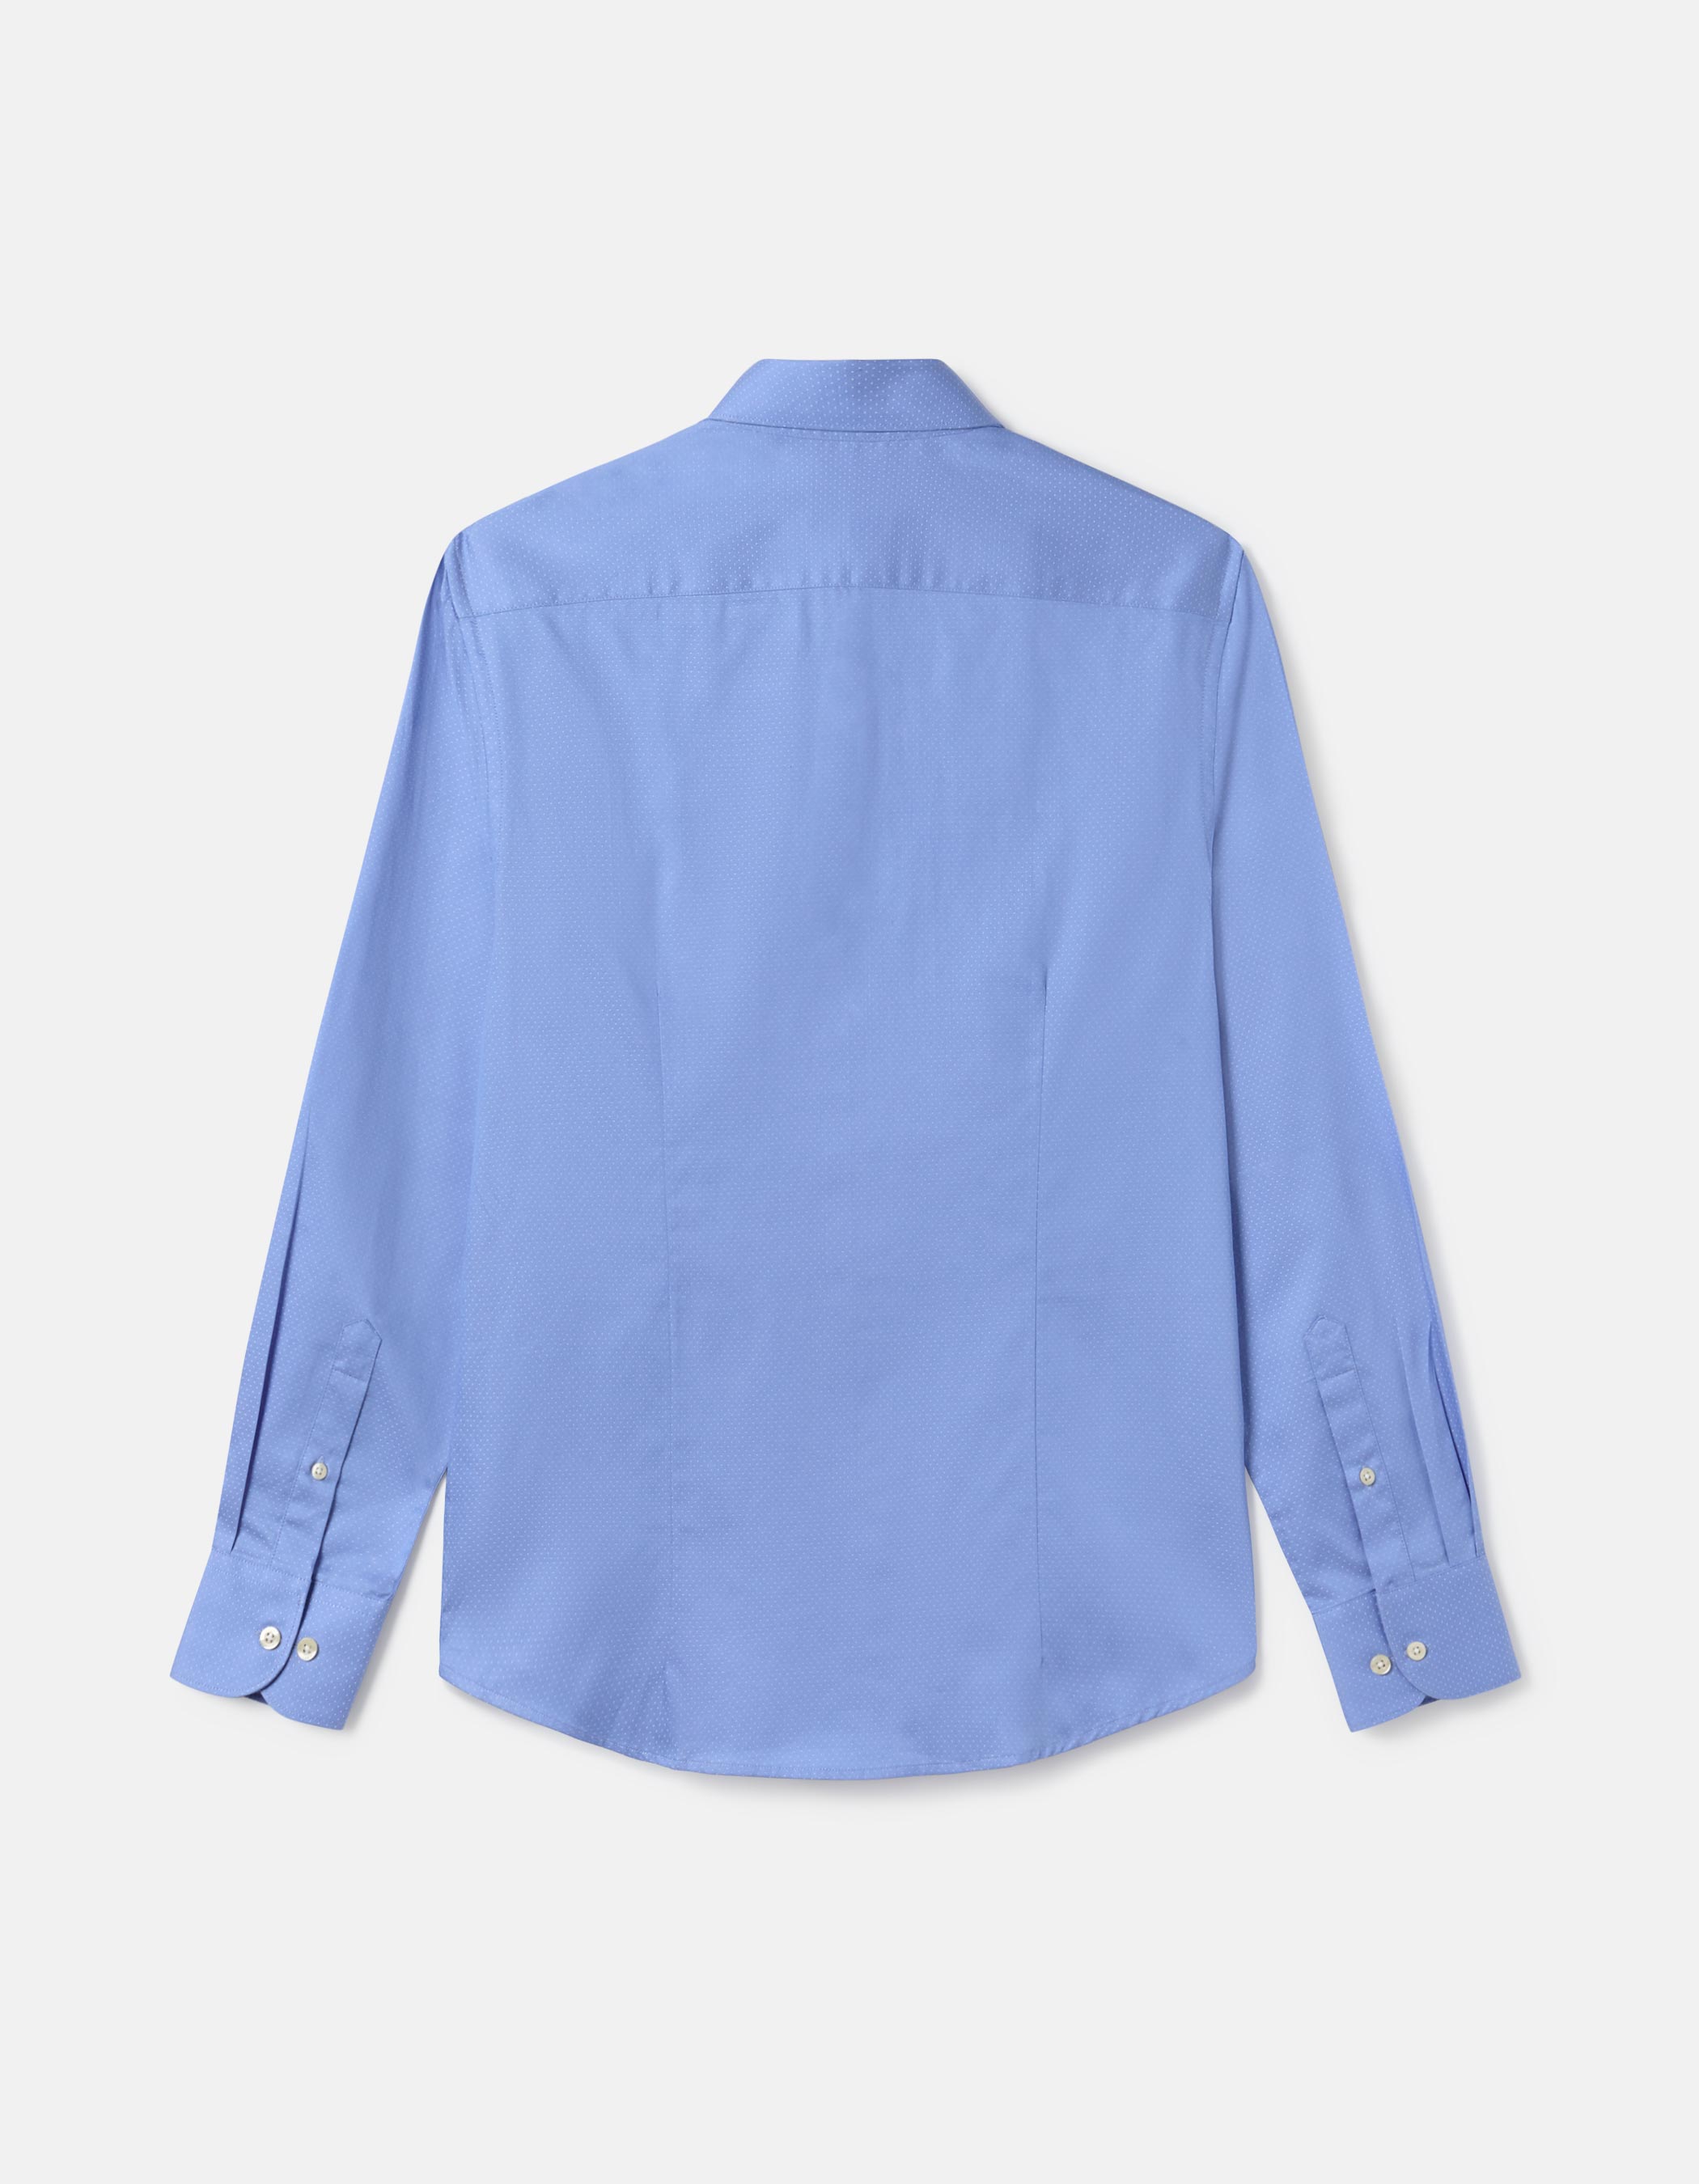 Camisa de micro punts blau clar 1